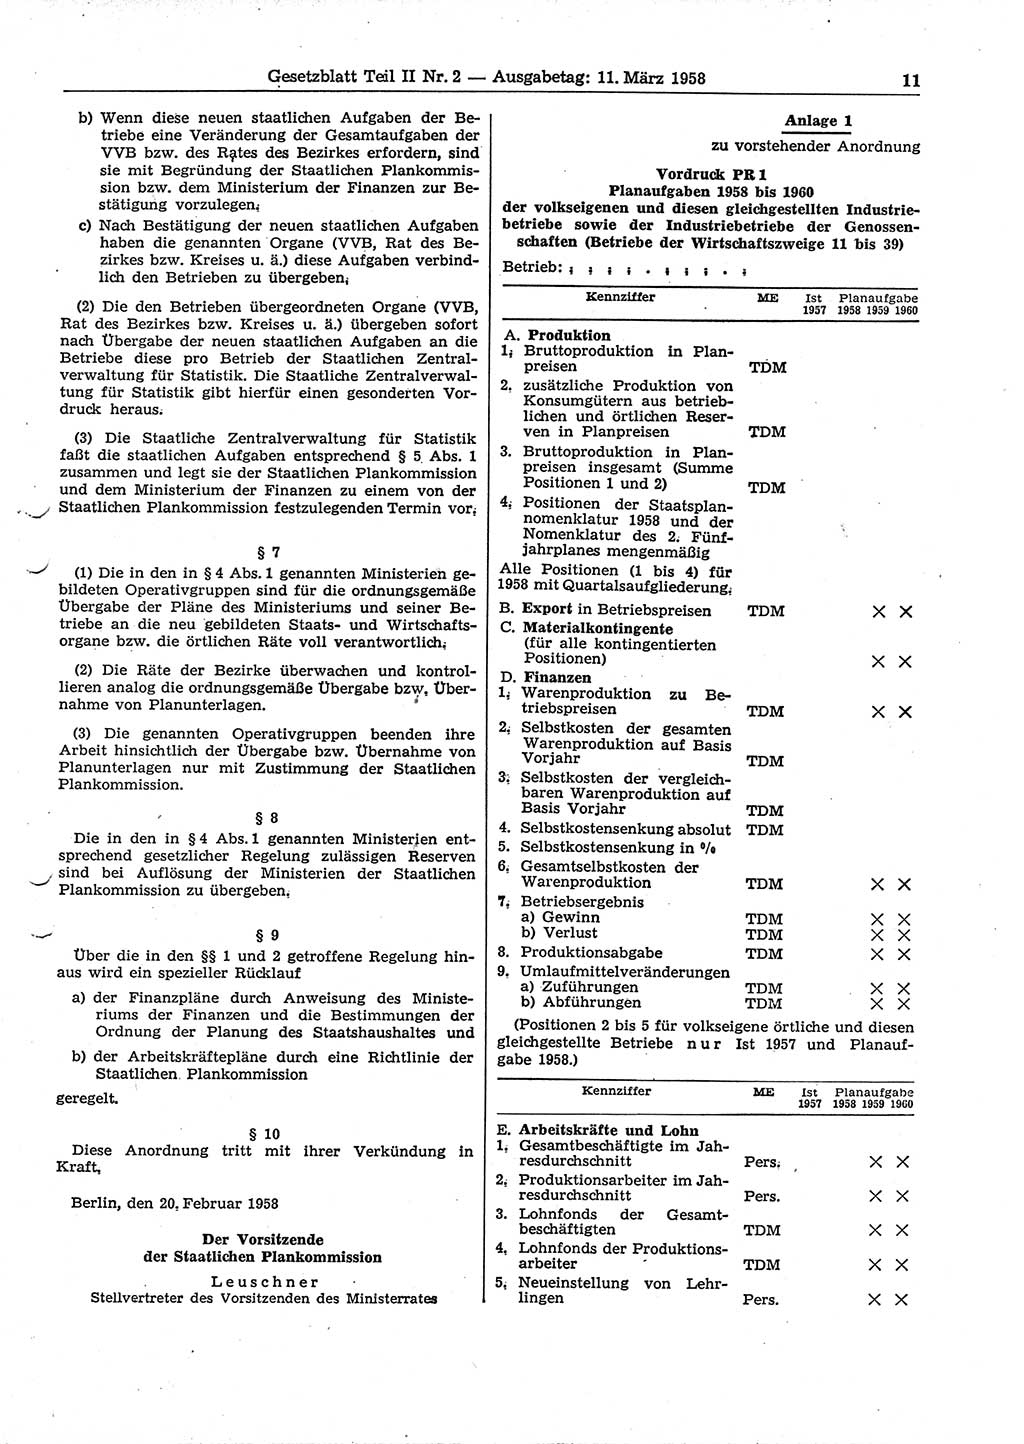 Gesetzblatt (GBl.) der Deutschen Demokratischen Republik (DDR) Teil ⅠⅠ 1958, Seite 11 (GBl. DDR ⅠⅠ 1958, S. 11)